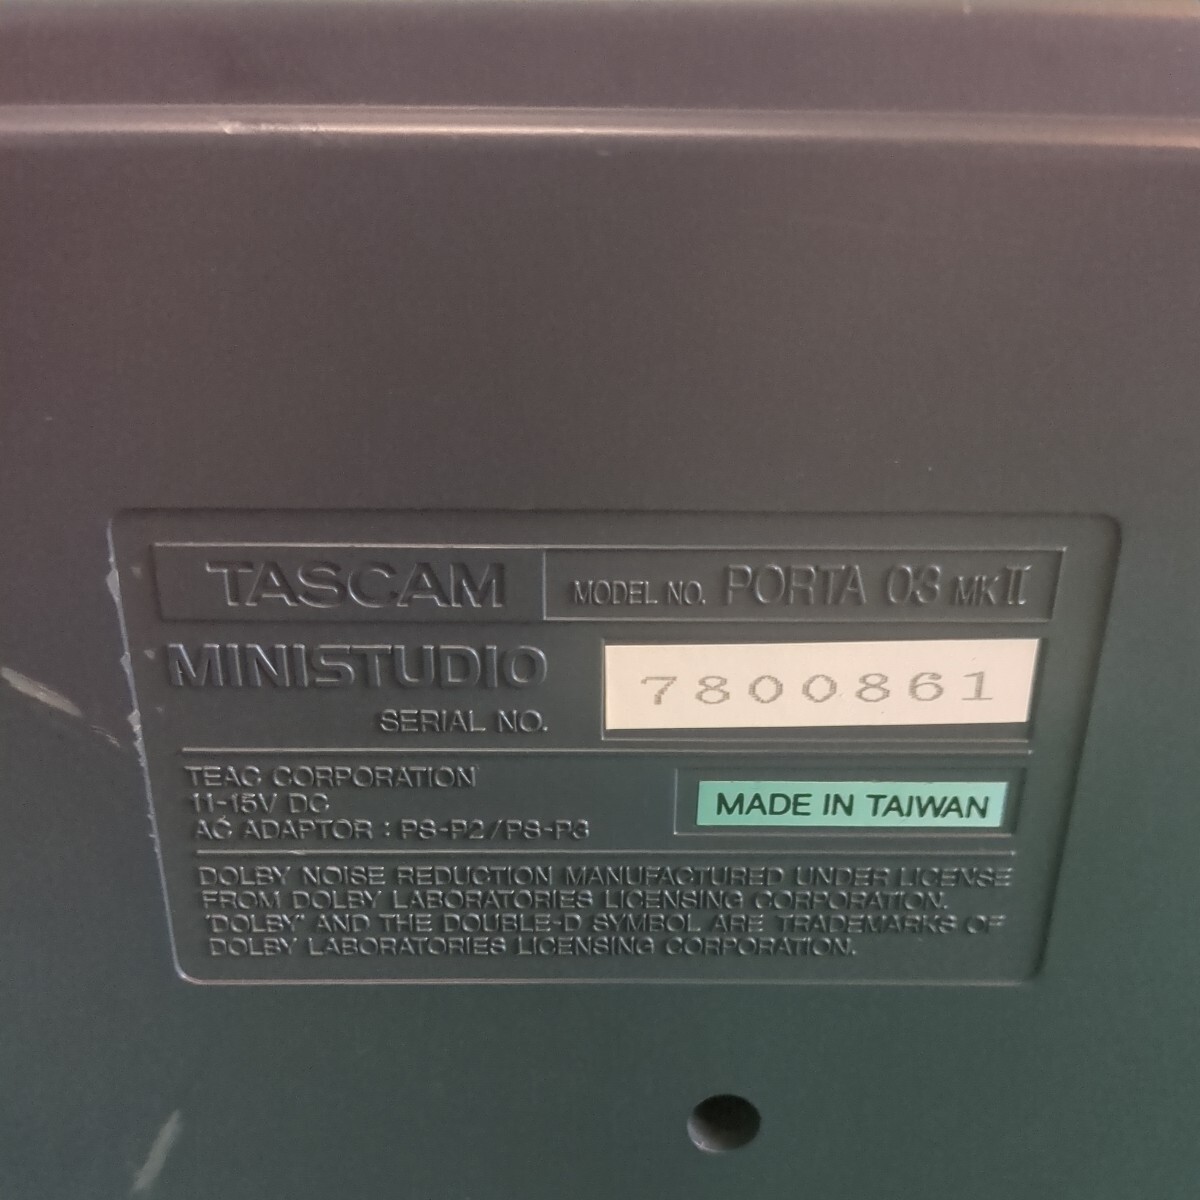 TASCAM MINISTUDIO PORTA 03 MKII 4TR MTR многоканальный магнитофон электризация подтверждено 